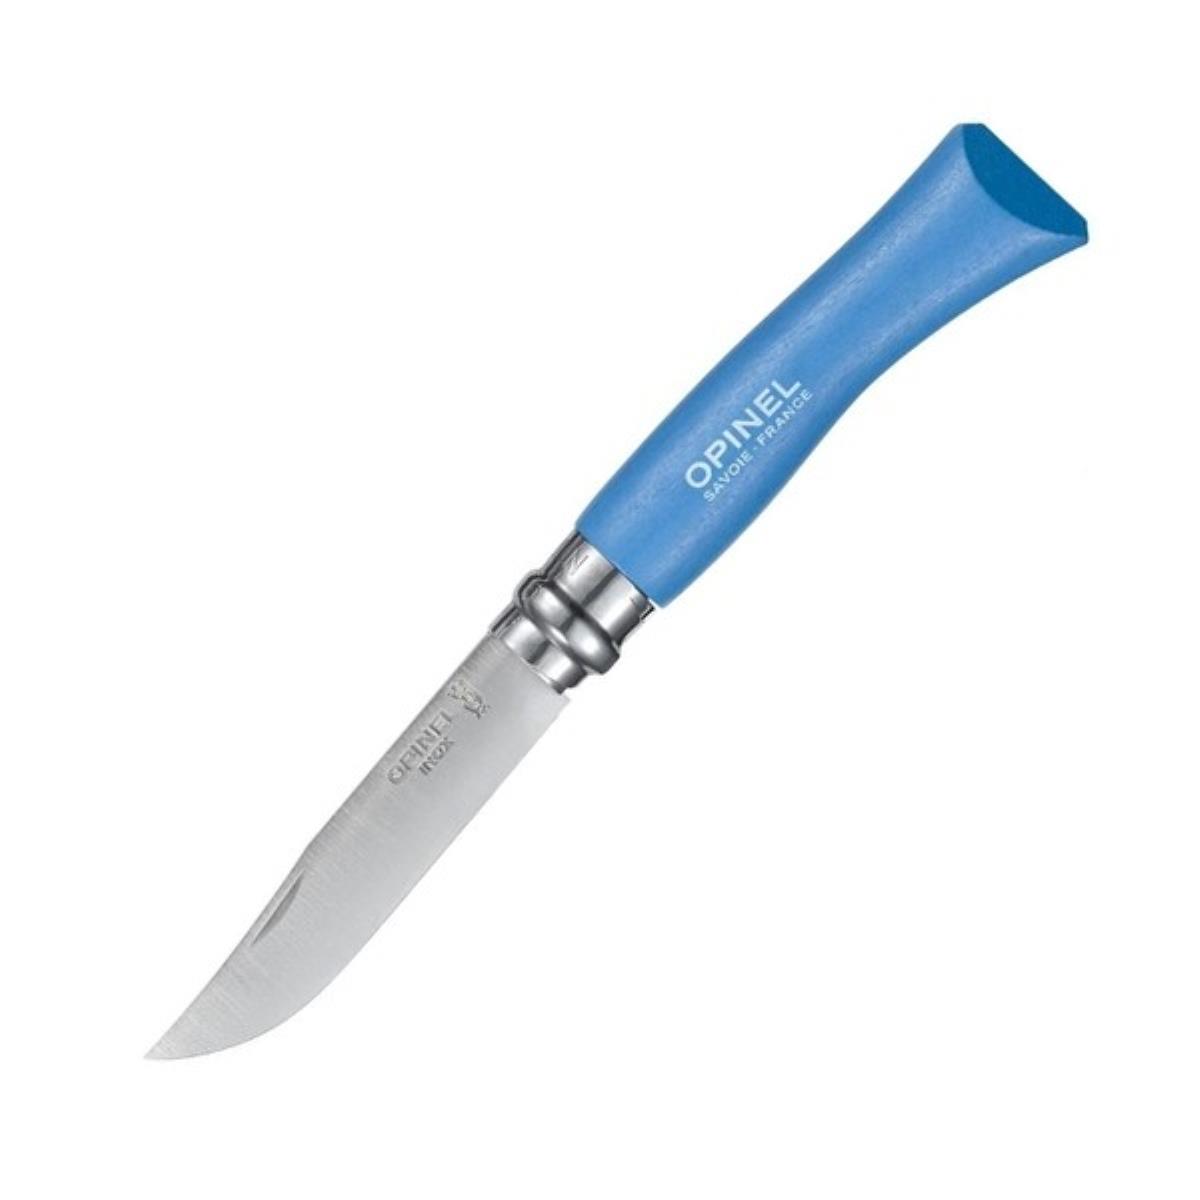 Нож №7 VRI Colored Tradition нерж. сталь, рукоять граб,  клинок 8см, темляк (голубой) OPINEL 288085 001441 - фото 1